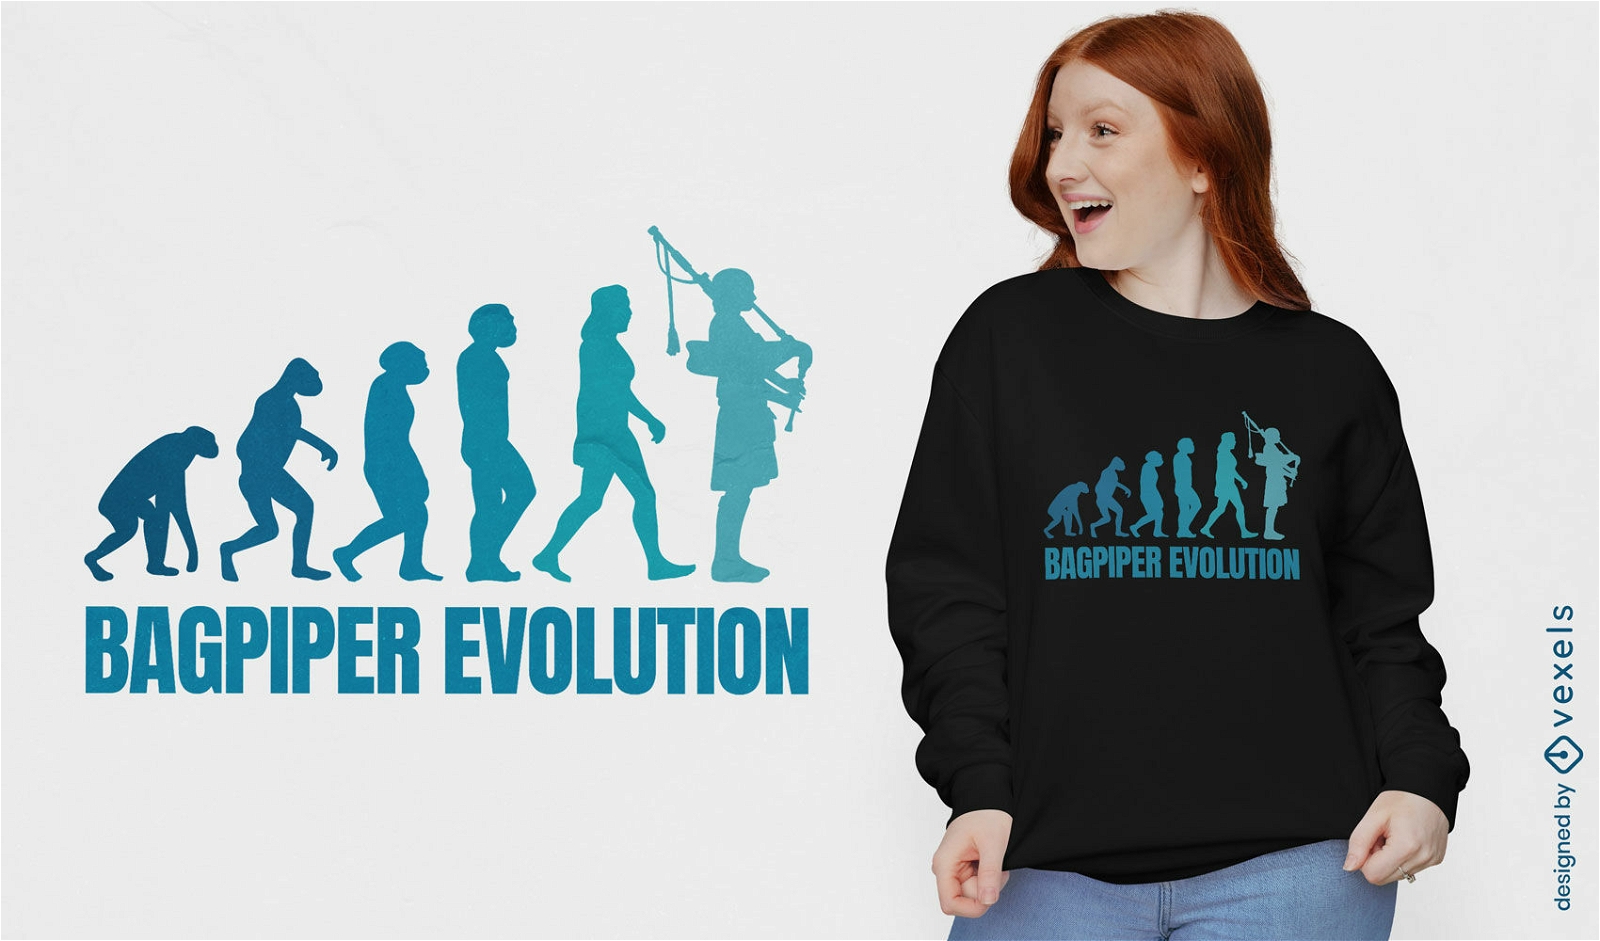 Bagpiper musician evolution t-shirt design